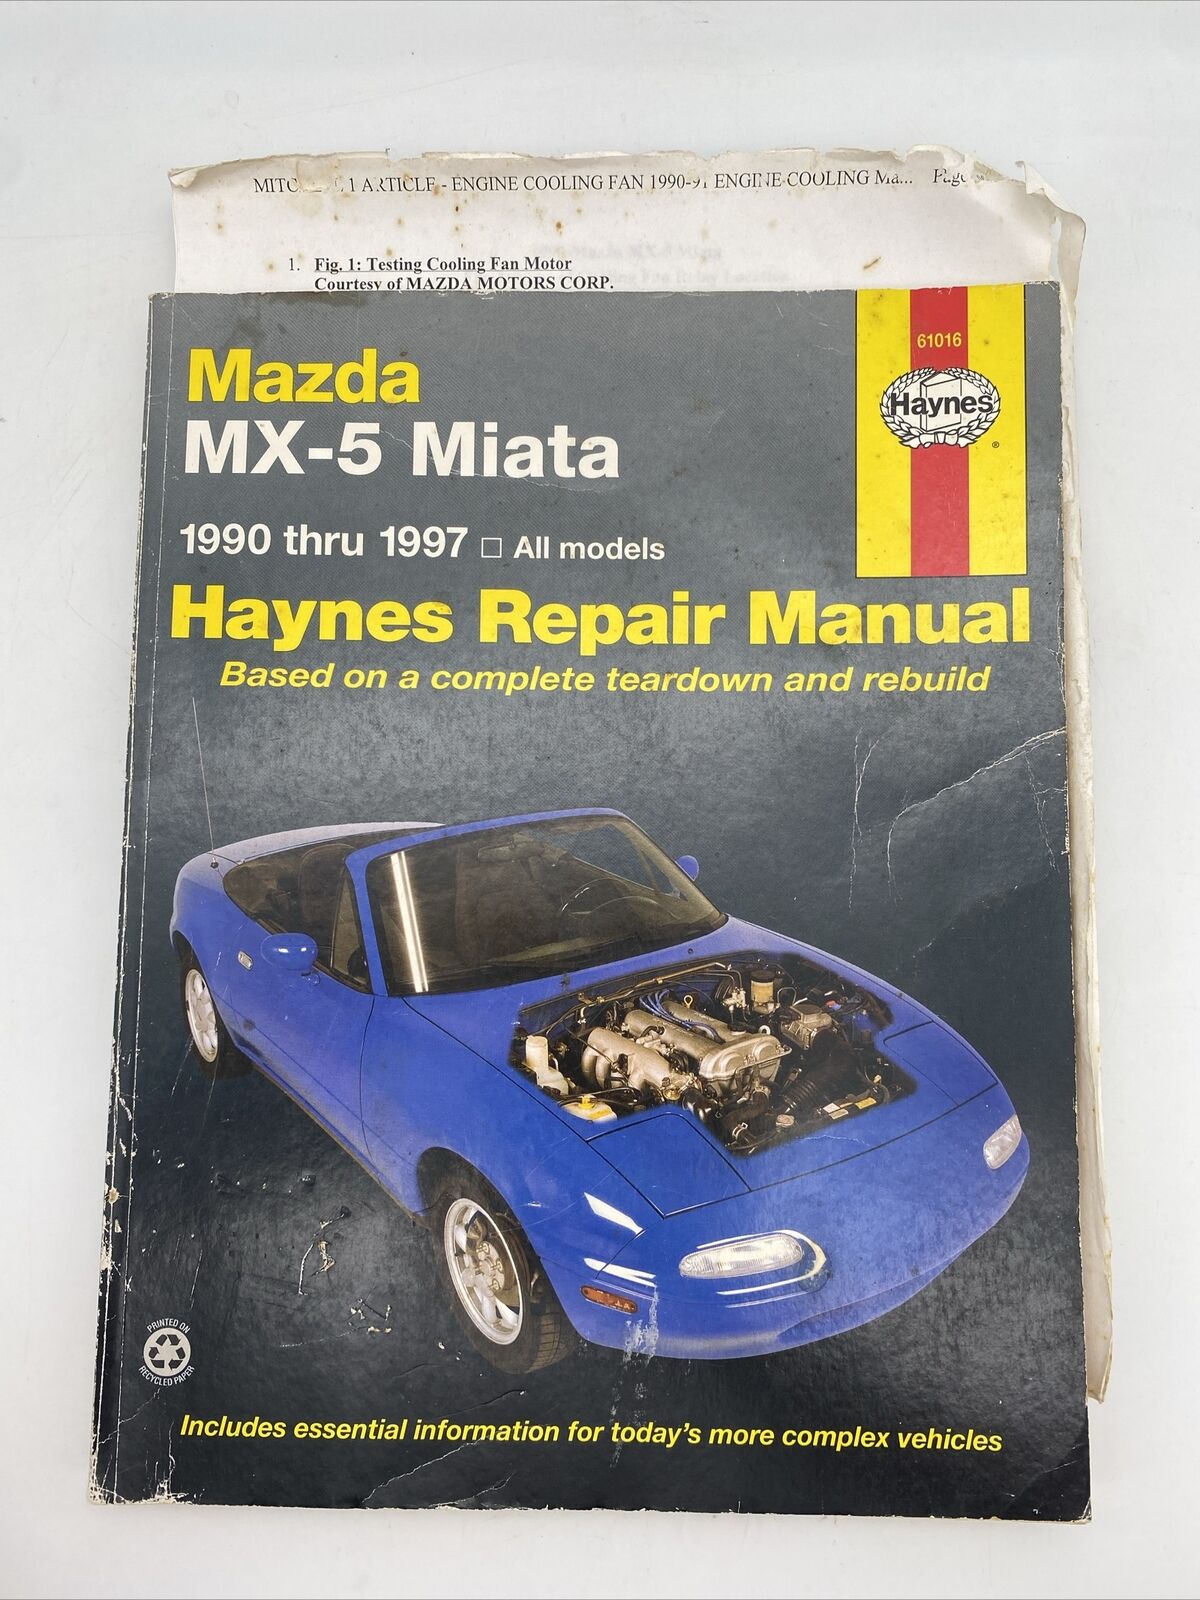 Mazda MX-5 Miata 1990-1997 All Models Haynes Repair Manual 61016